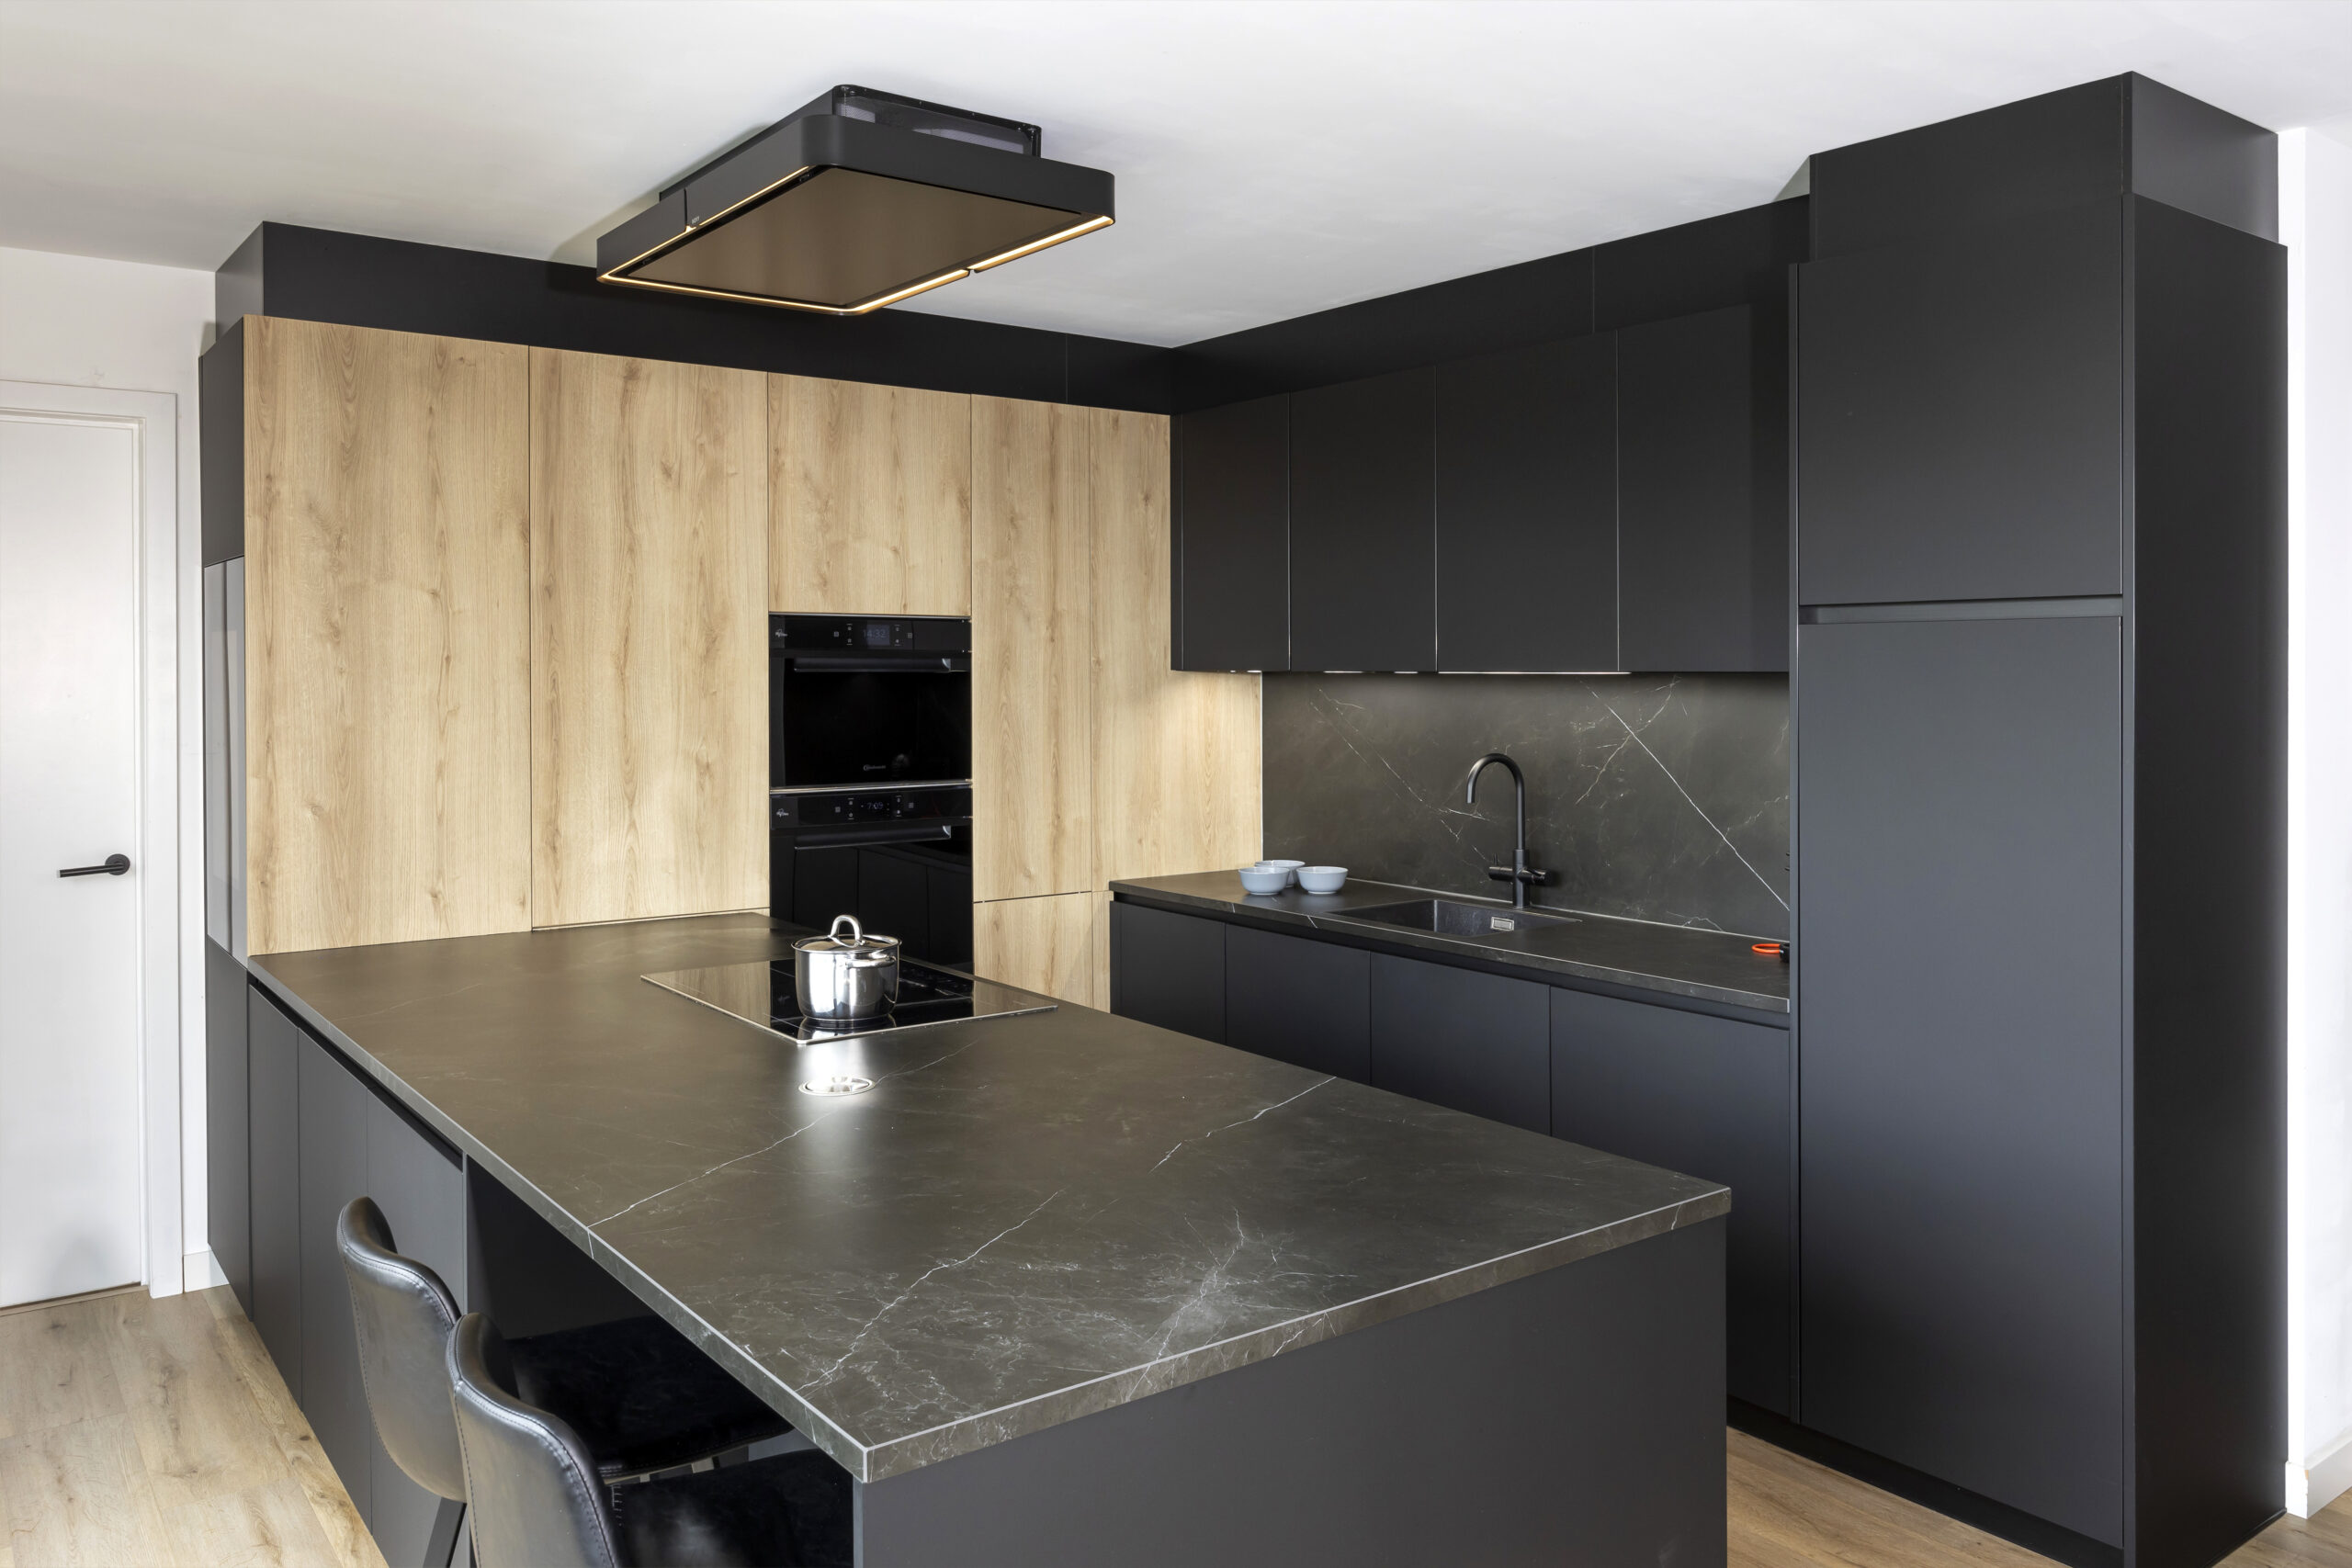 strakke zwarte moderne keuken met houttoets novy dampkap greeploos wijnkoeler liebher keramisch werkblad